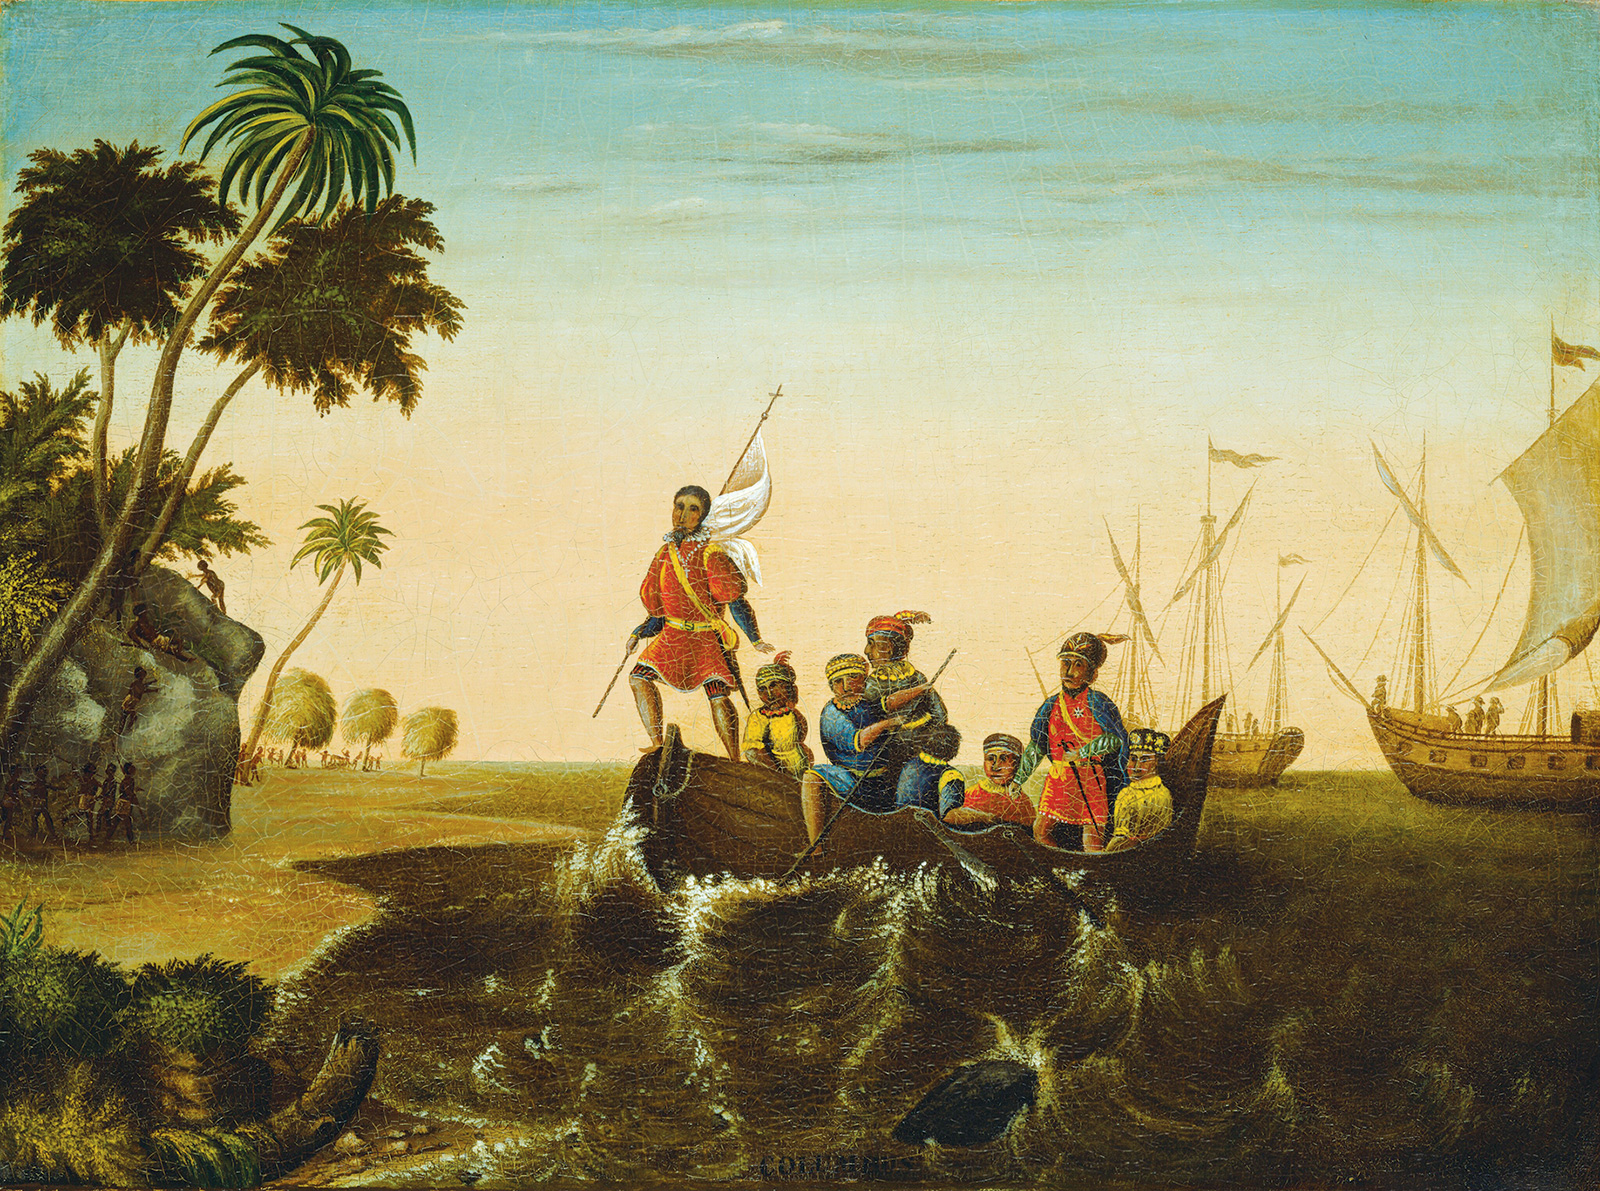 Edward Hicks, *La llegada a tierra de Colón*, 1837. National Gallery of Art 